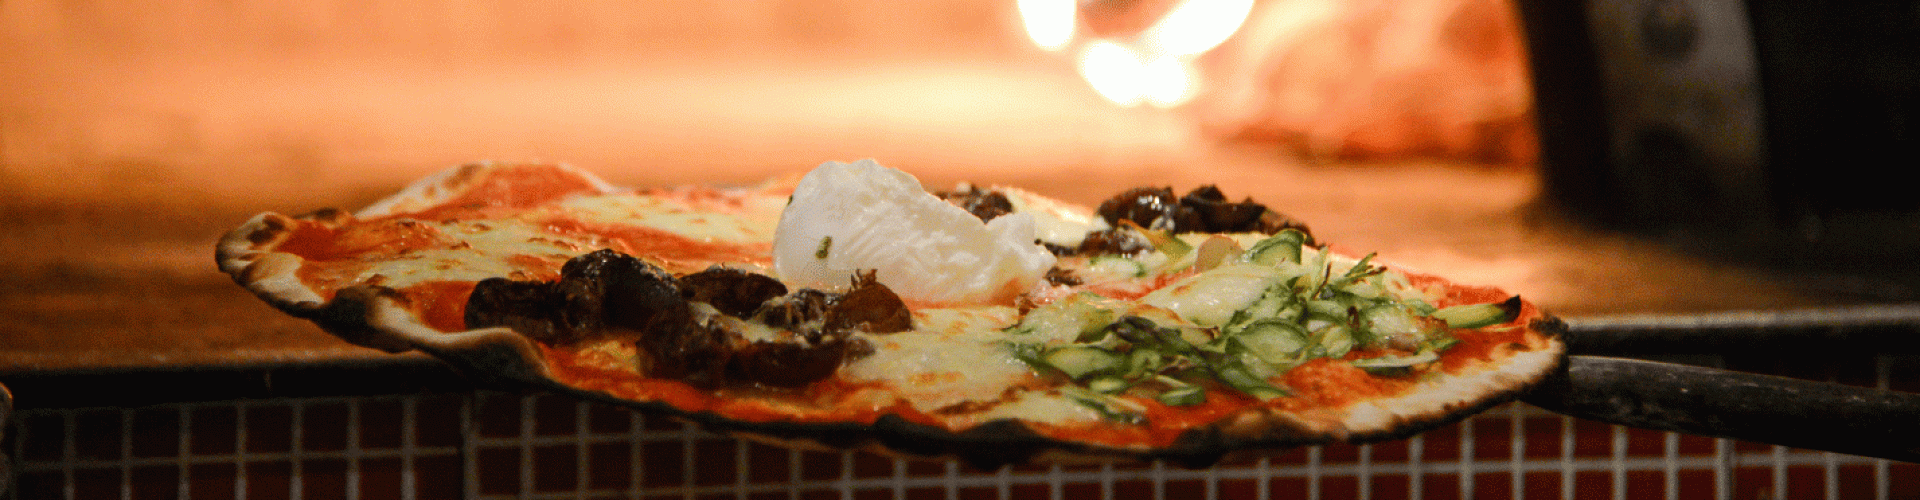 Pizzería-Buenos-Aires-Gastronomía-Porteña